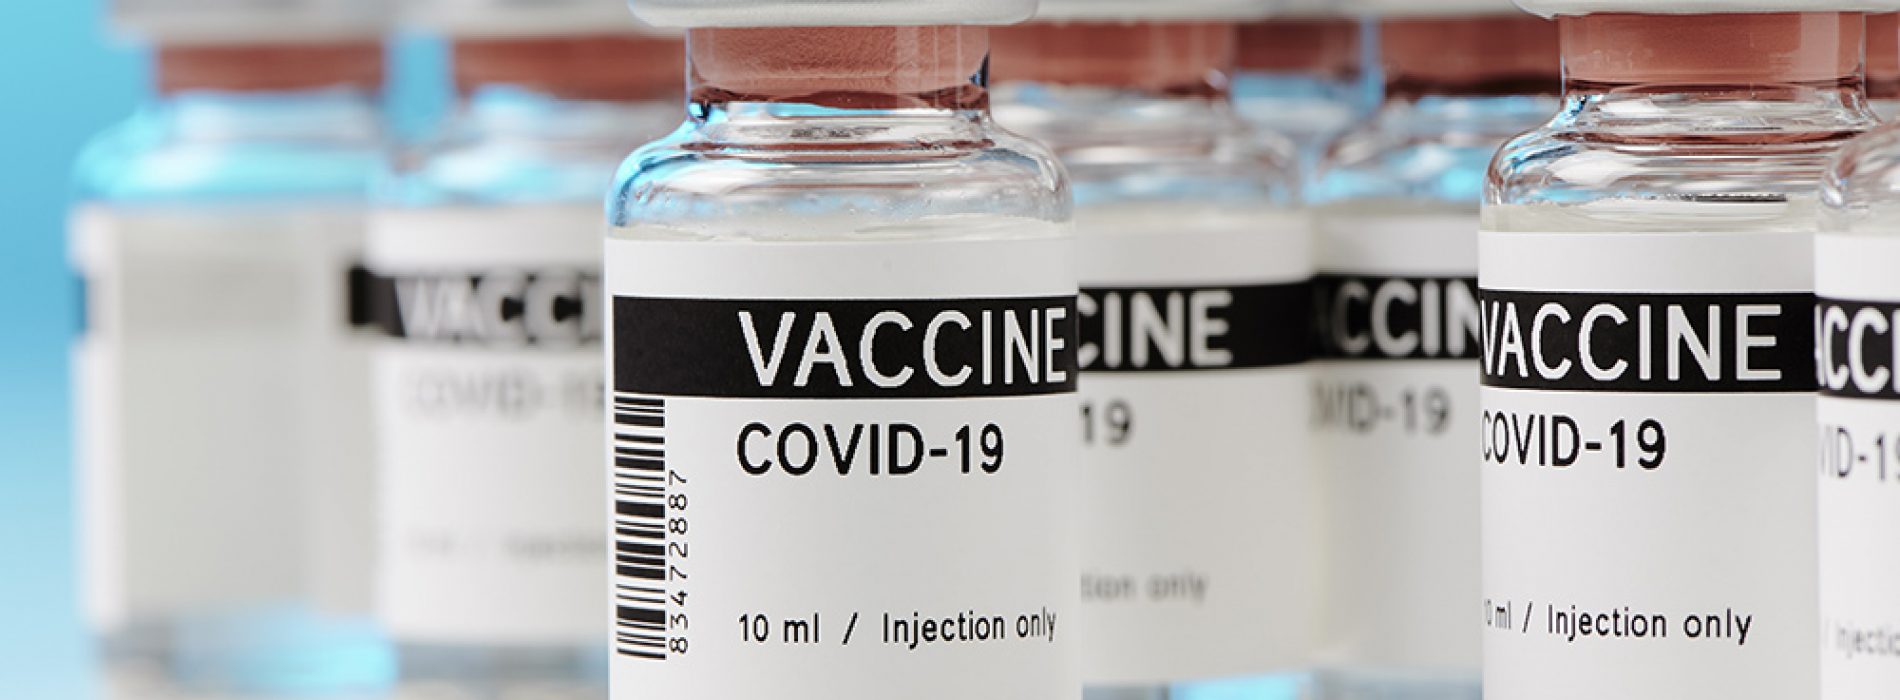 Chili leert op de harde manier dat Chinese COVID-19-vaccins niet veel bescherming bieden